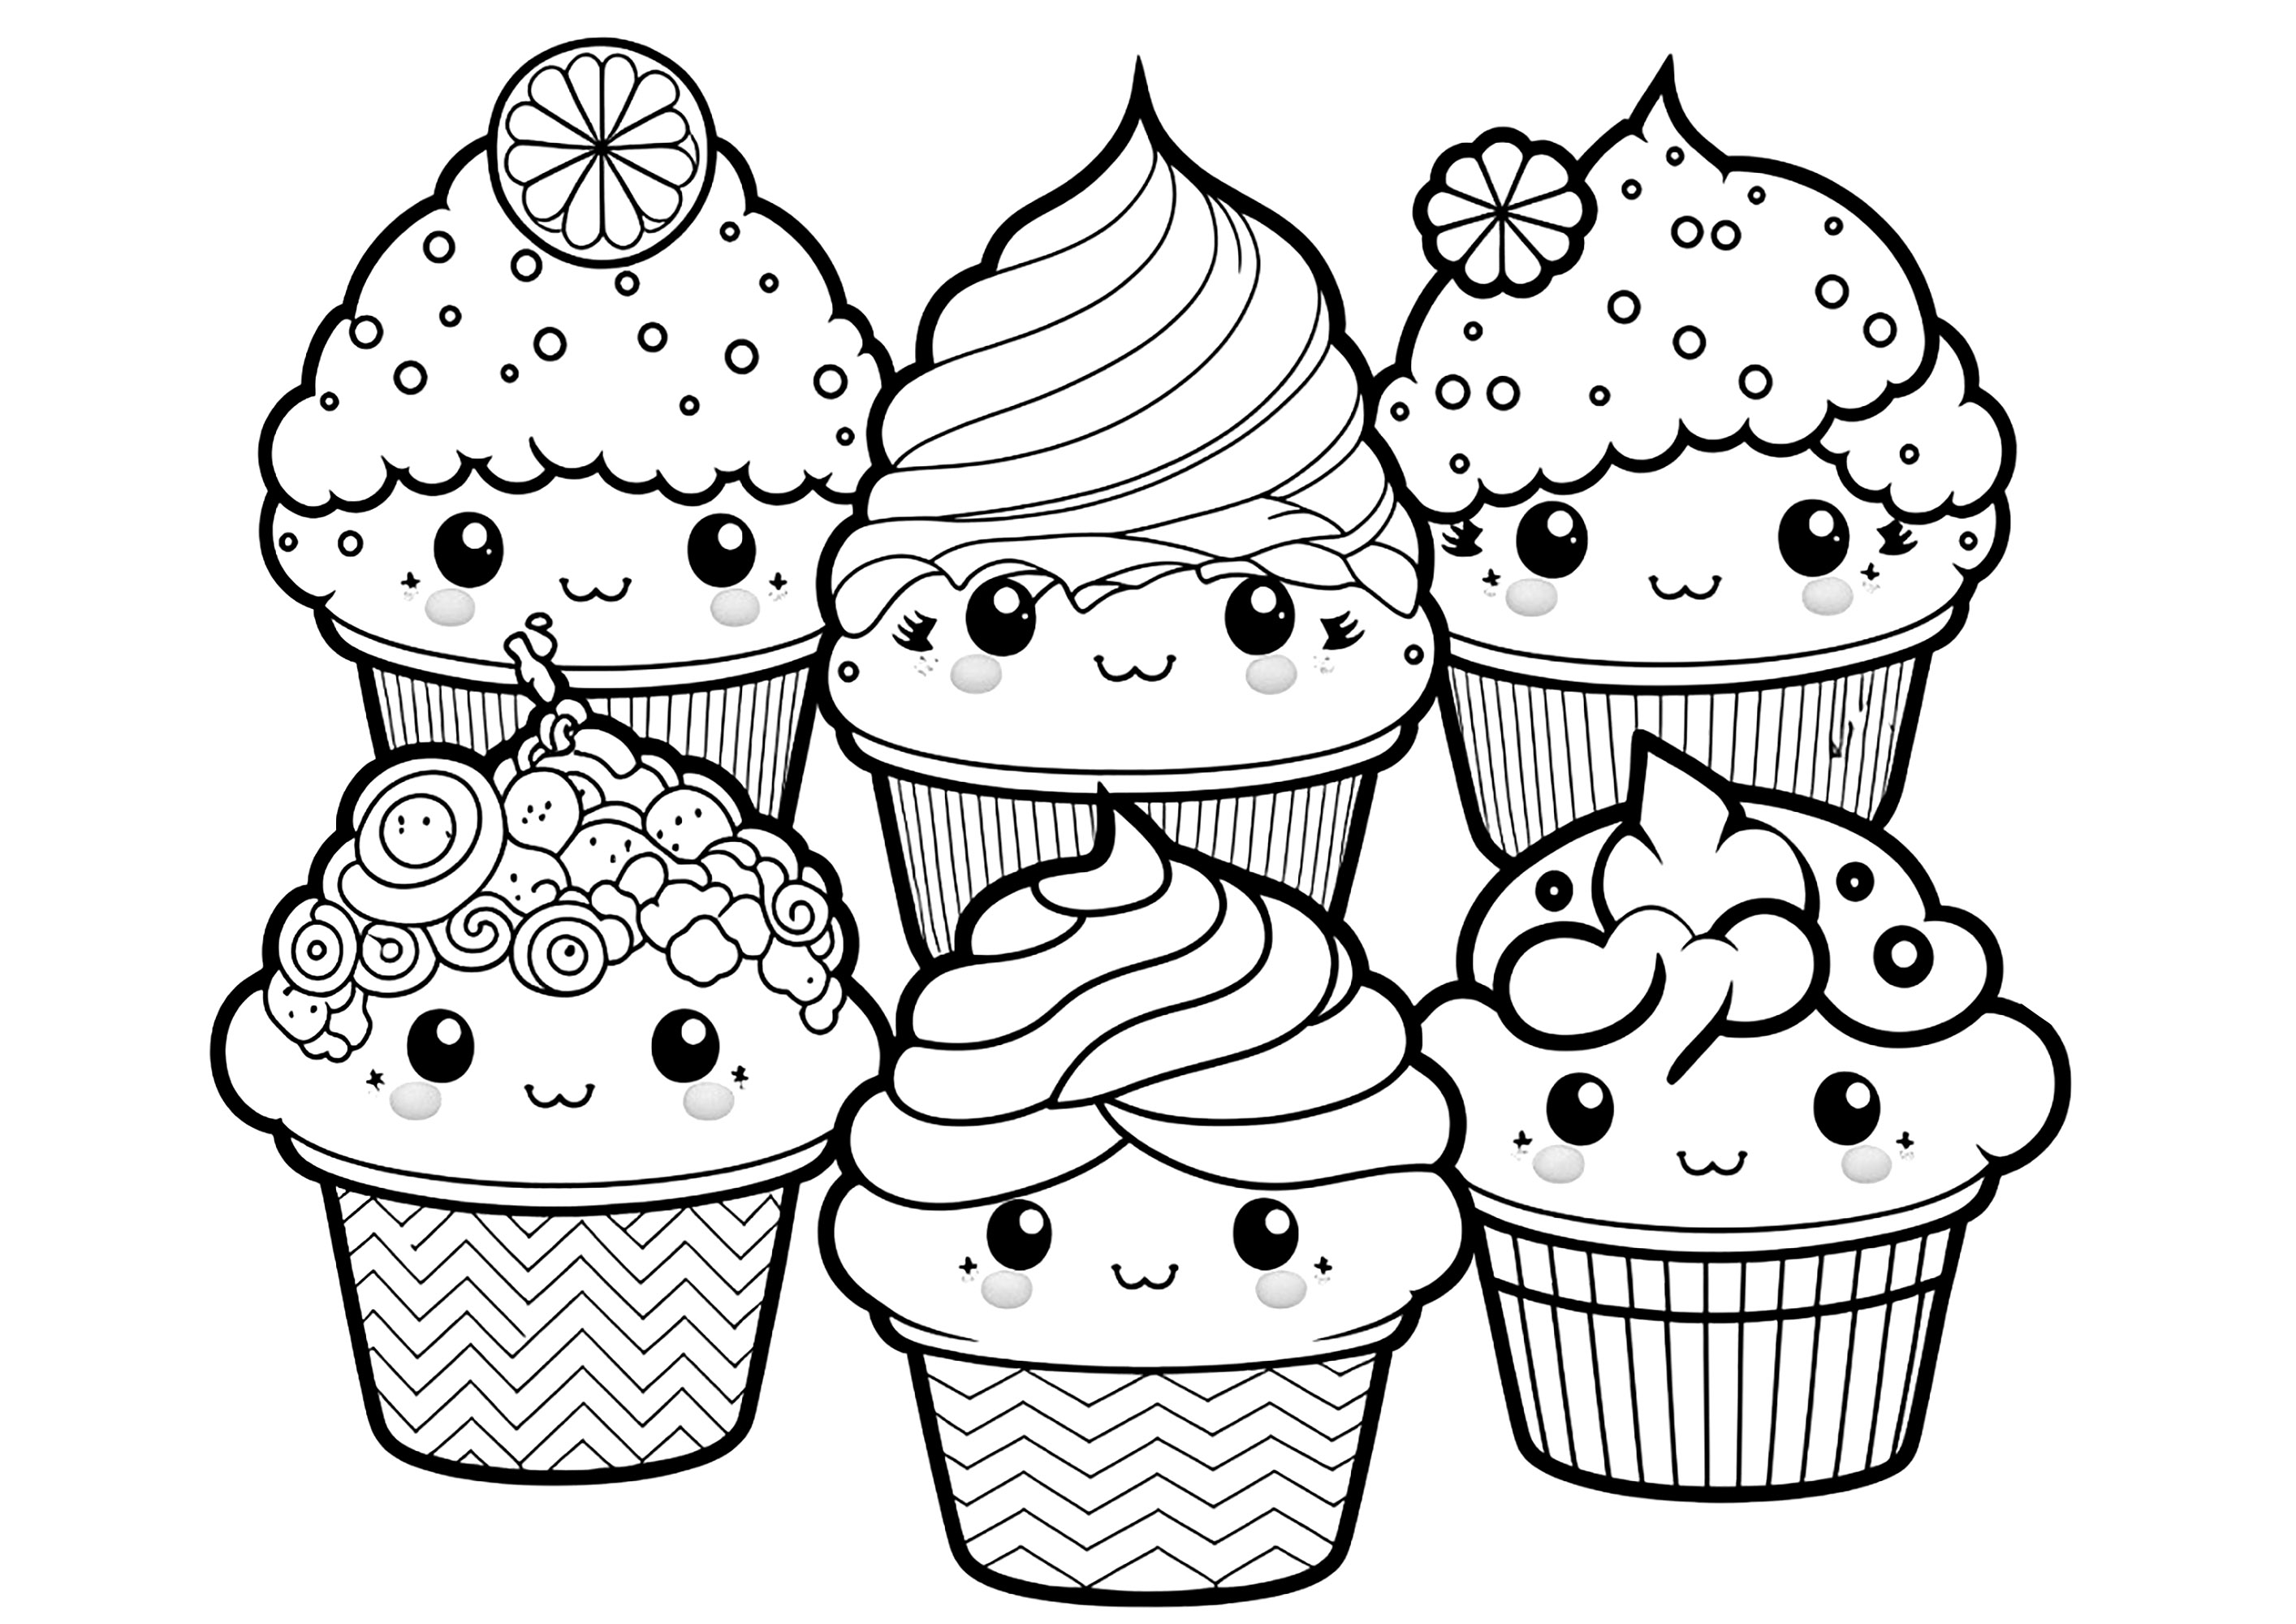 Six cupcakes, simples à colorier, dessinés avec le style Kawaii